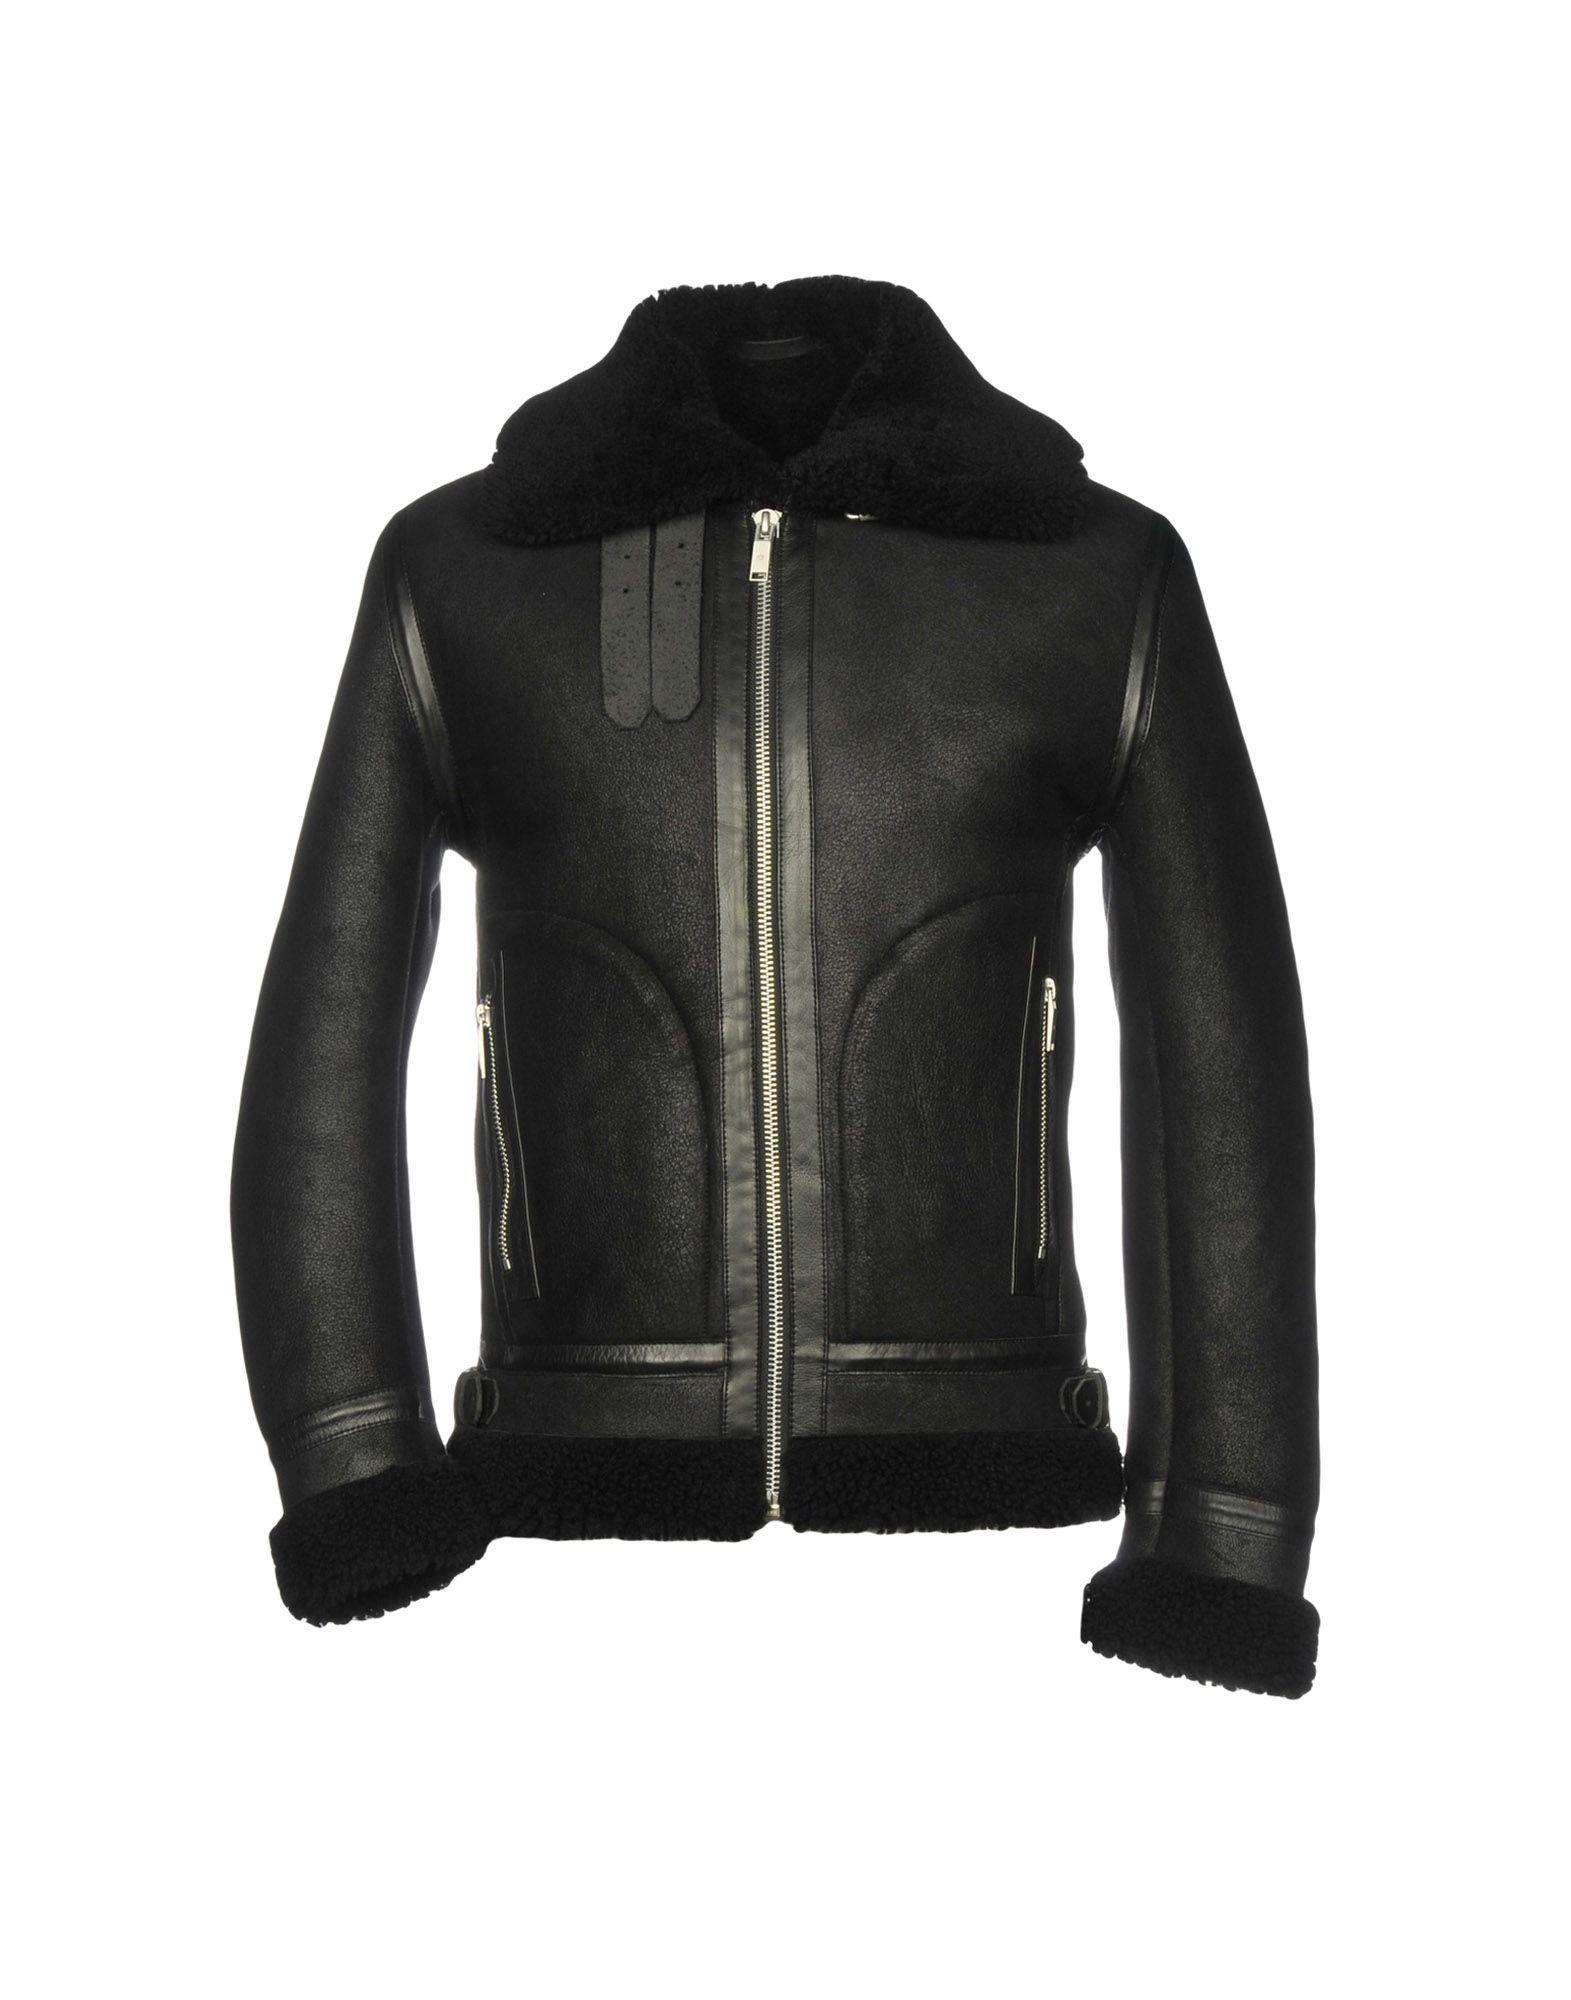 Junk De Luxe Leather Jackets in Black for Men - Lyst